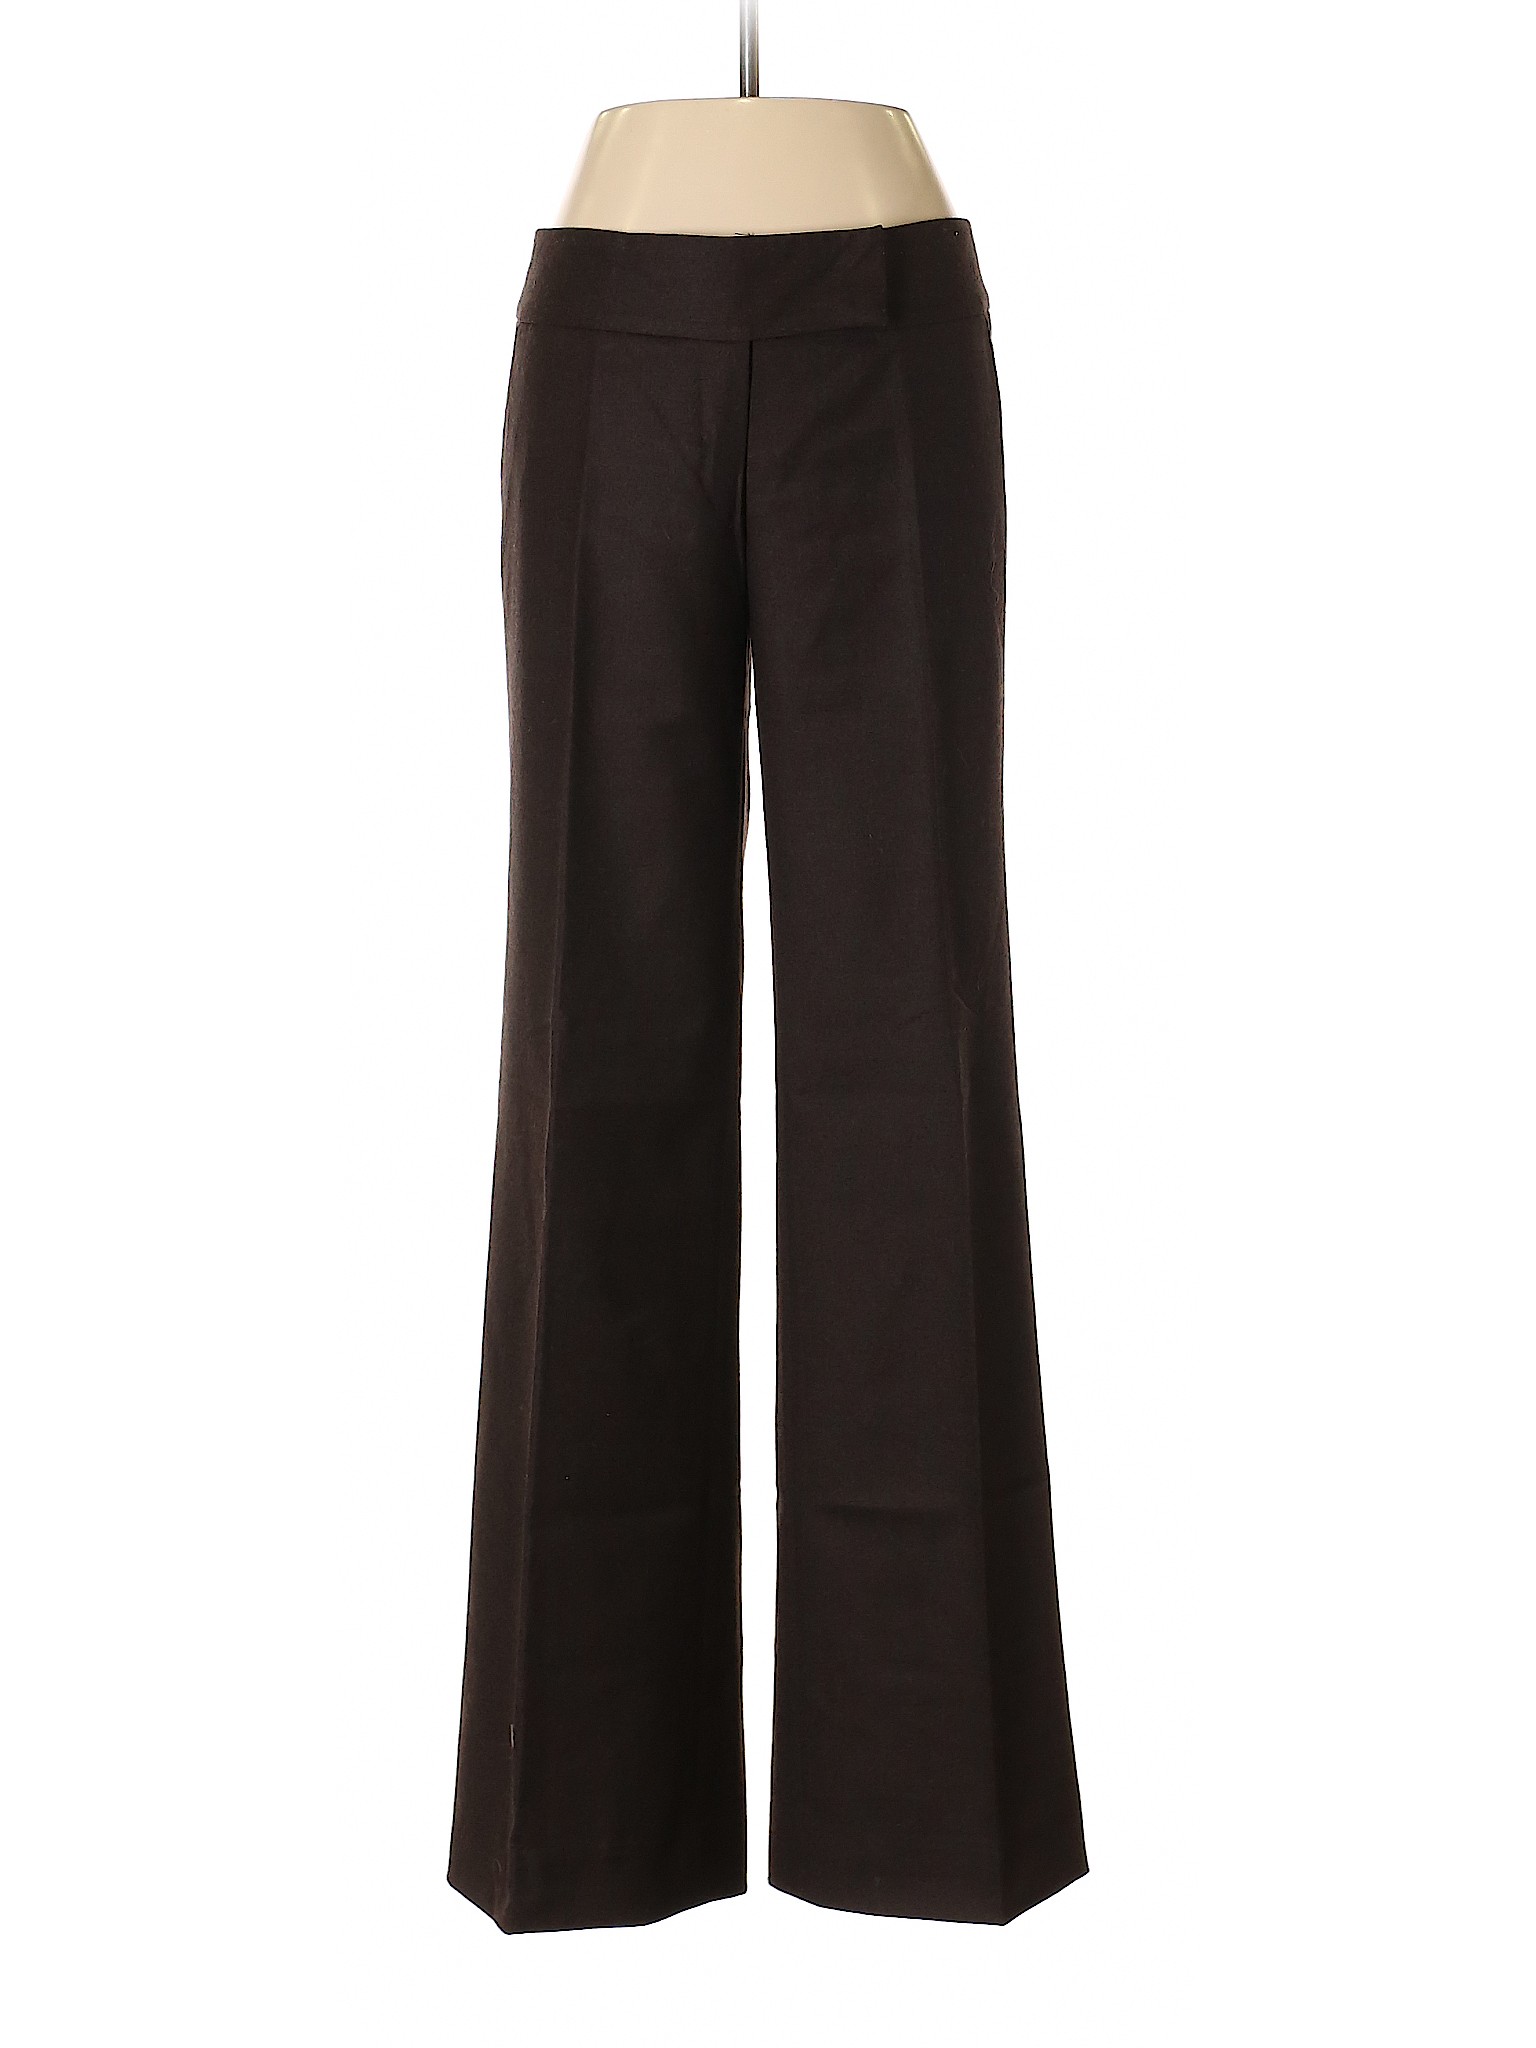 Zanella Women Brown Dress Pants 4 | eBay